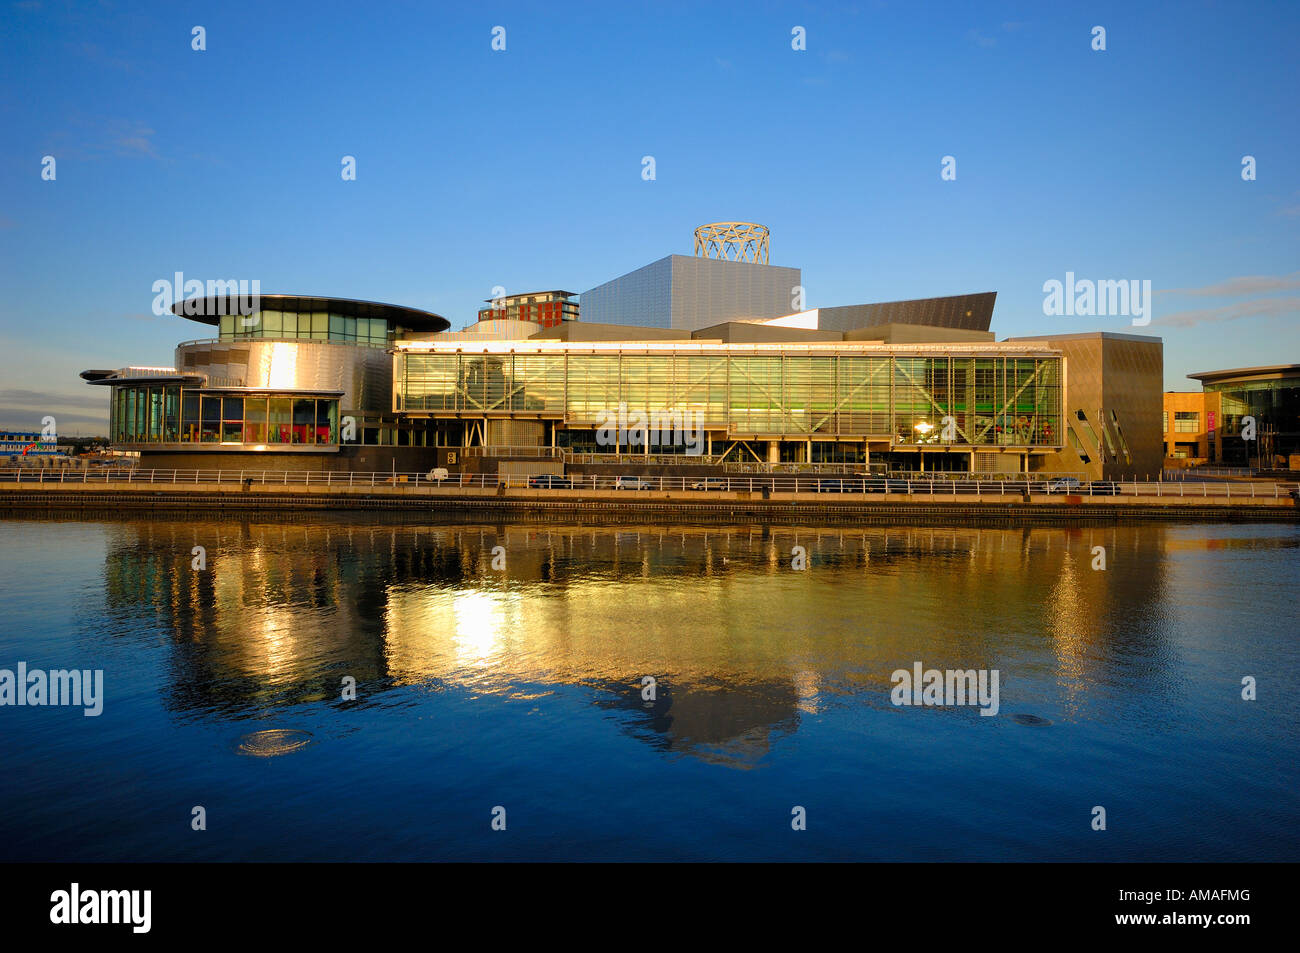 Lowry centre la fin de l'après-midi avec reflet dans l'eau du canal de Manchester Salford Quays Angleterre Angleterre europe Banque D'Images